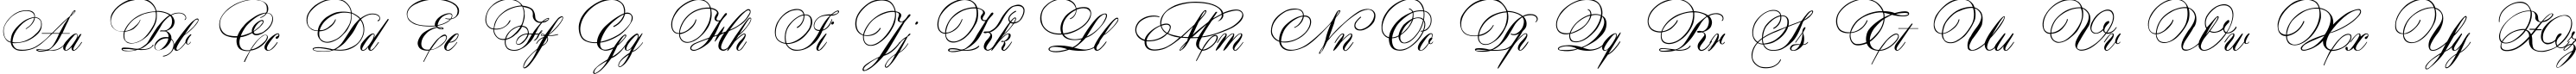 Пример написания английского алфавита шрифтом Aurora Script